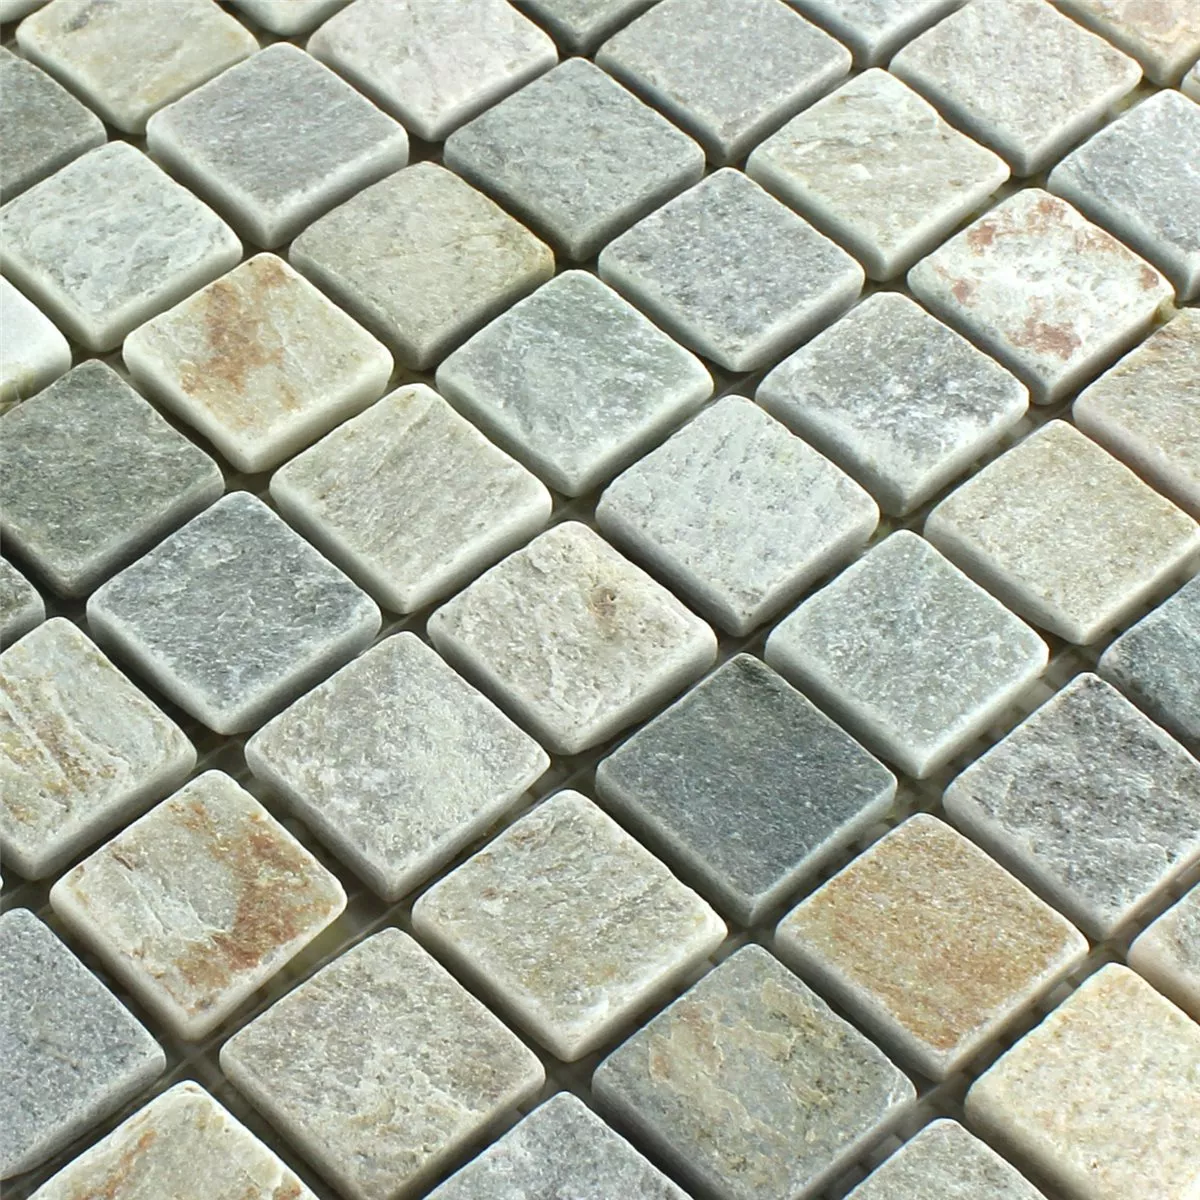 Naturstein Quarzit Mosaik Fliesen Beige Grau 22x22mm